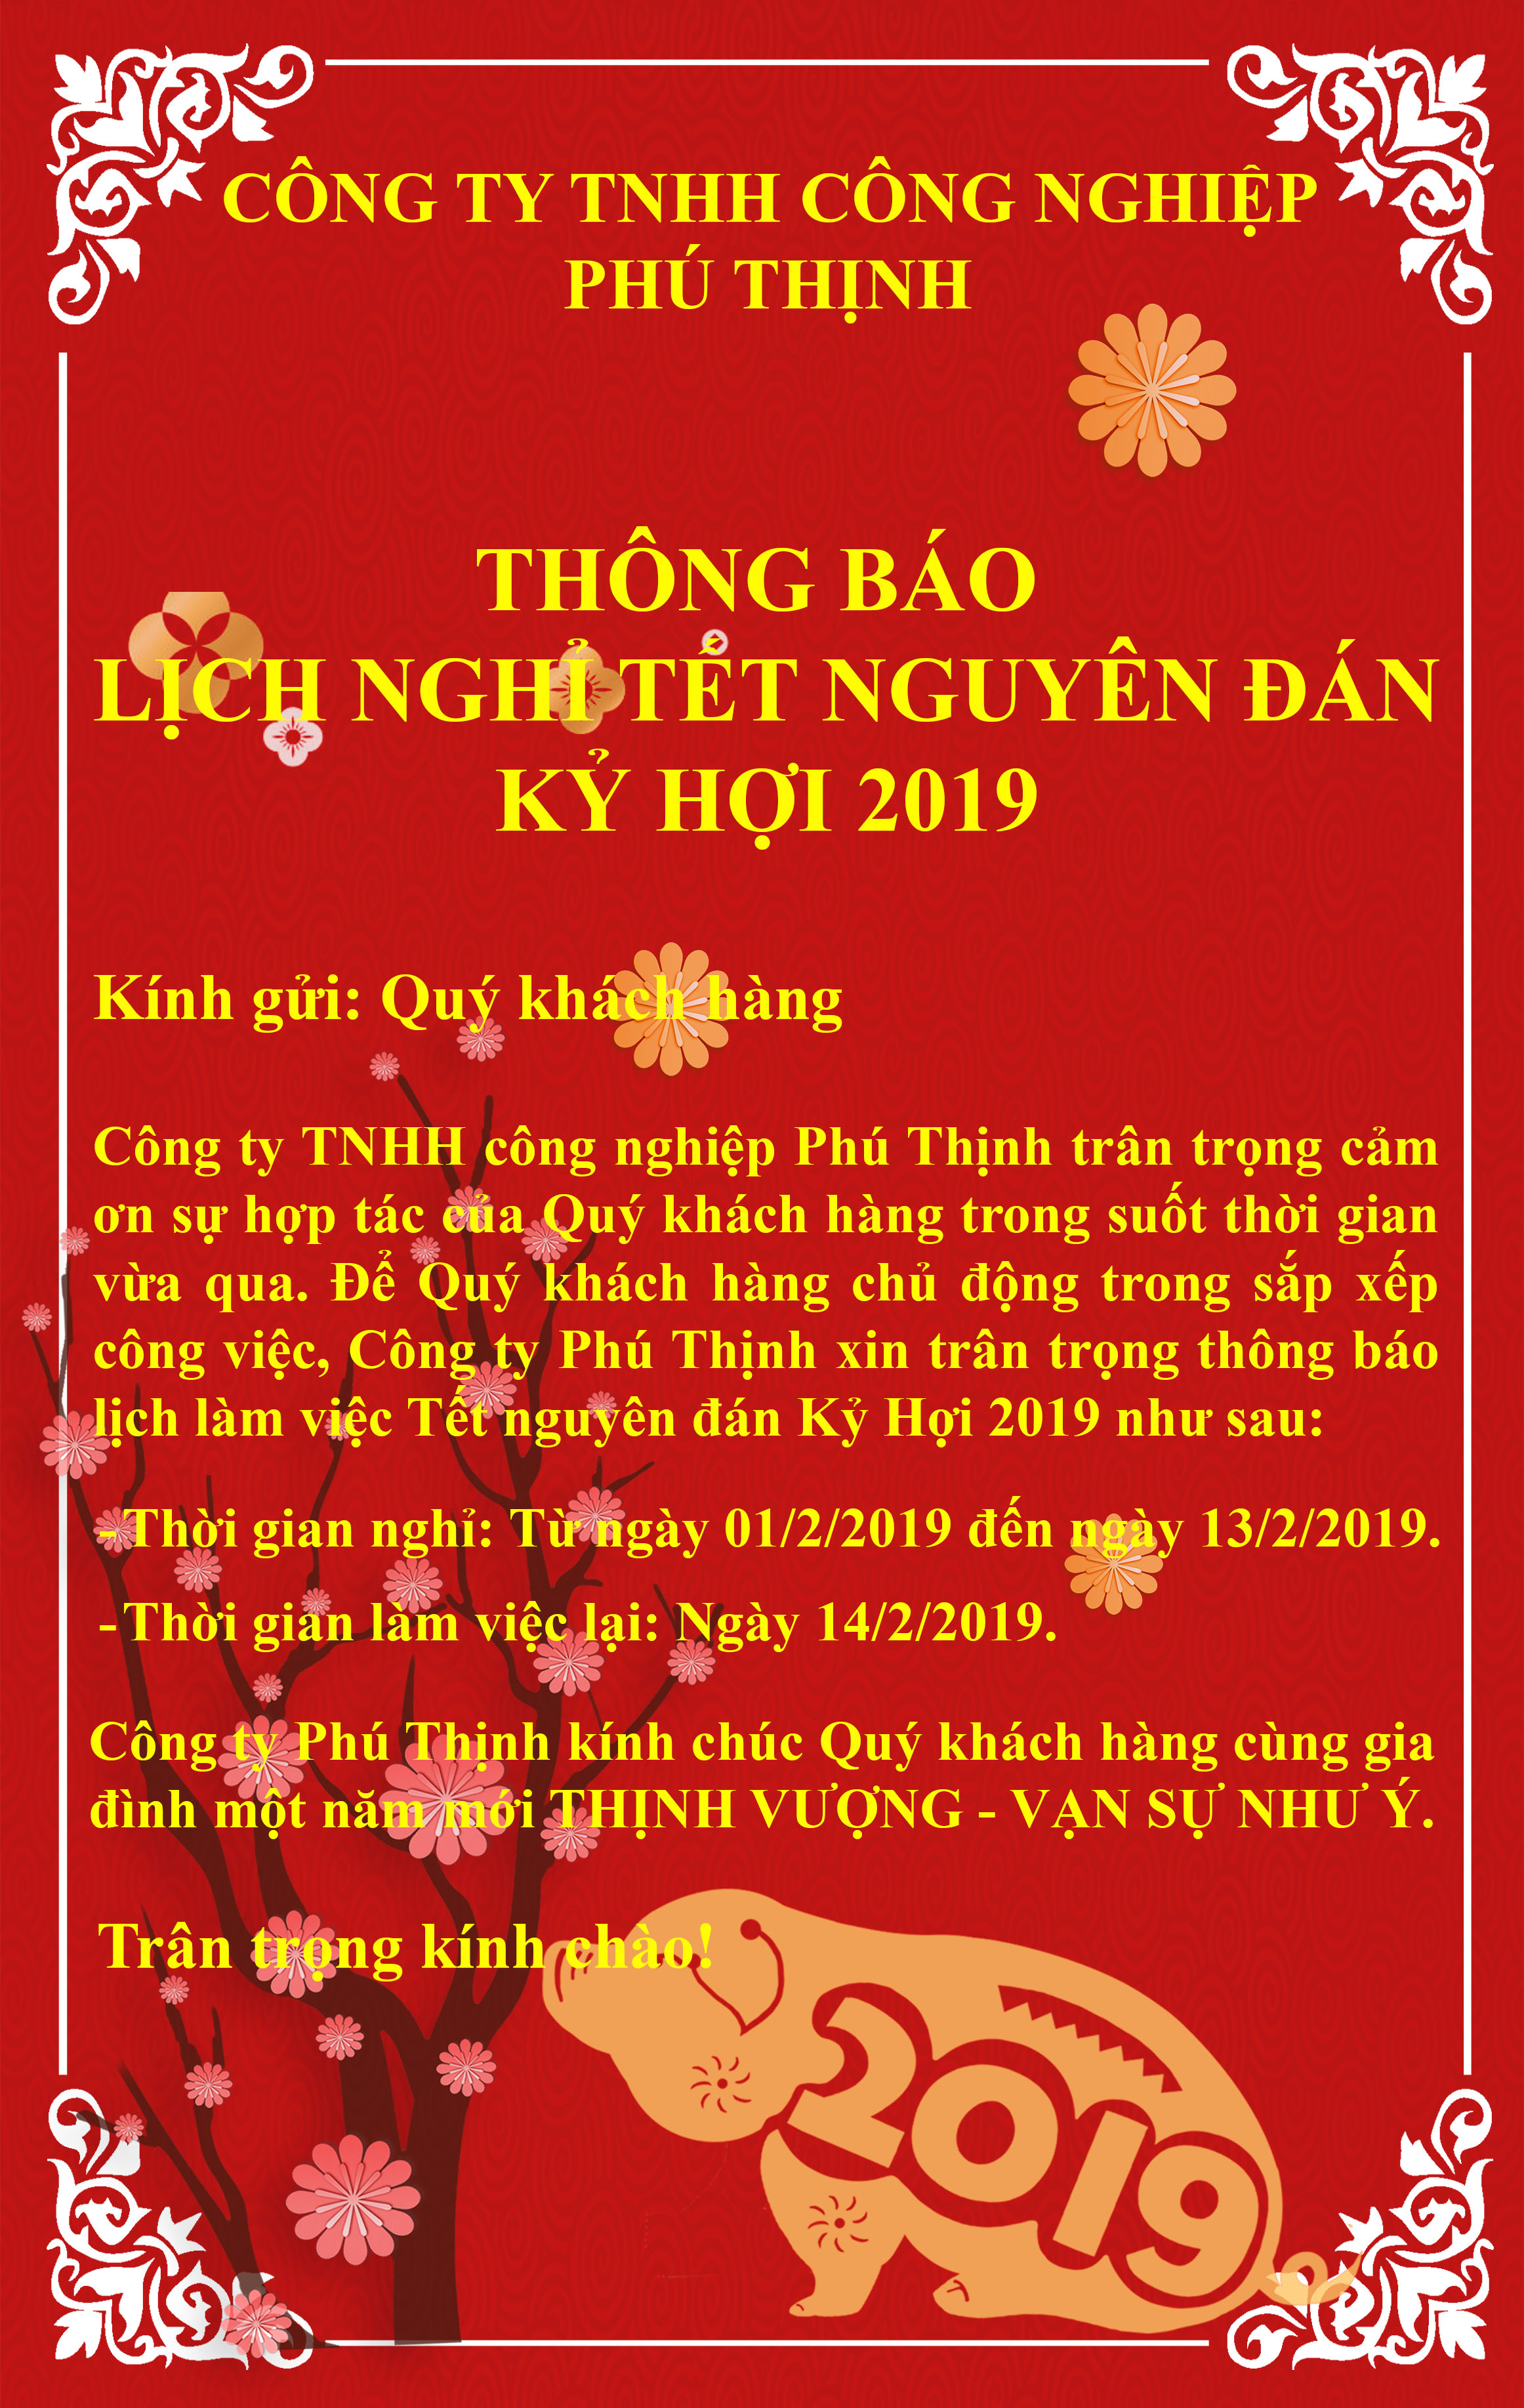 Thông báo lịch nghỉ tết nguyên đán Công ty TNHH công nghiệp Phú Thịnh 2019